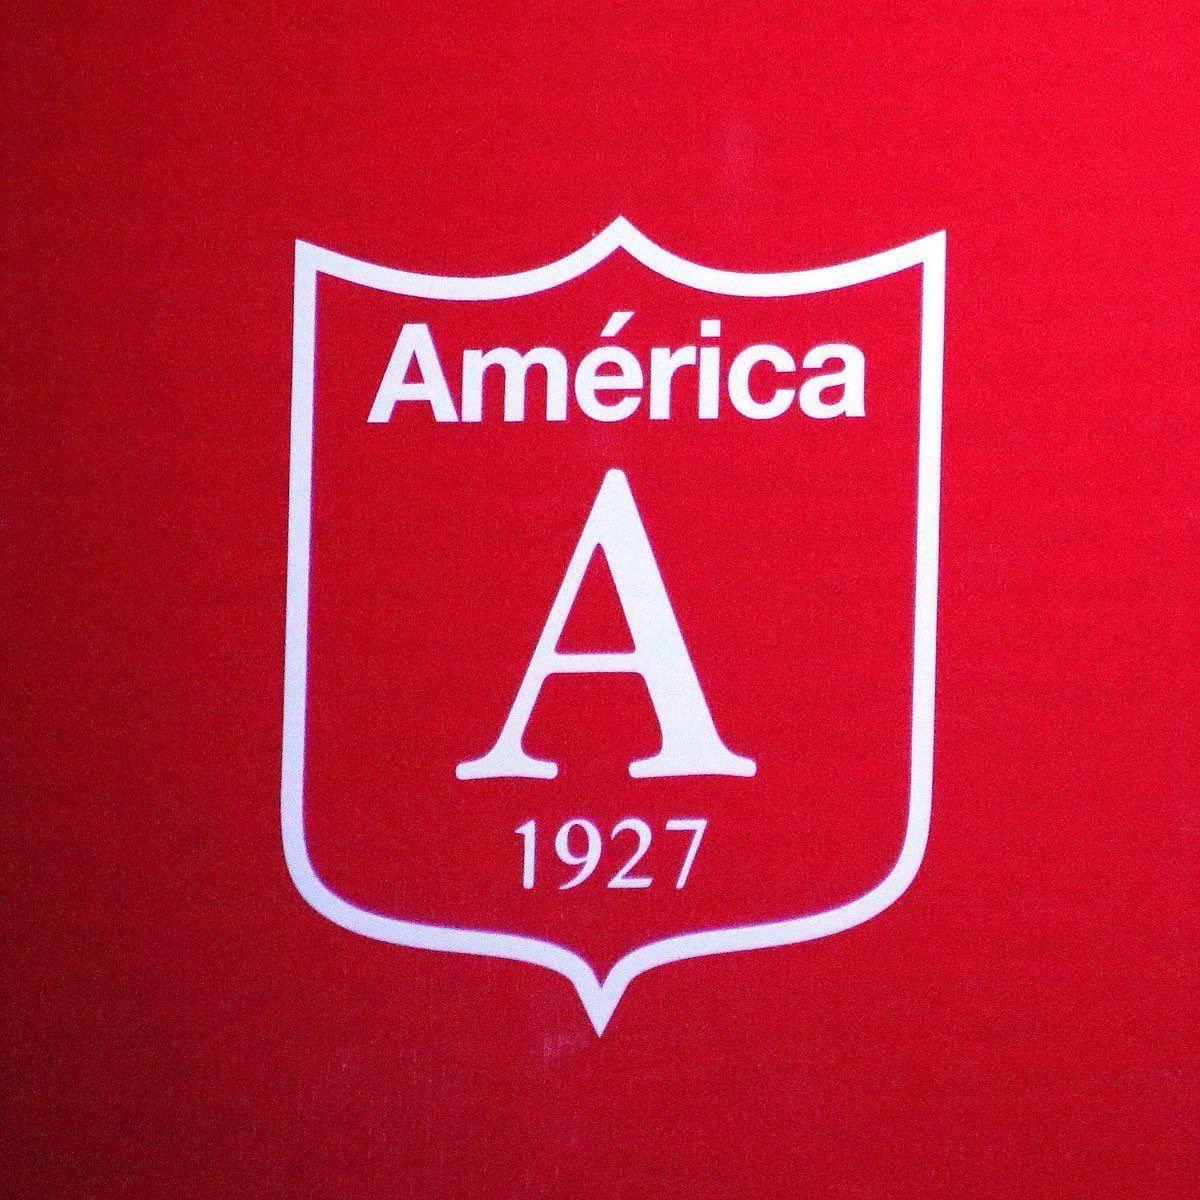 Later Logo - America de Cali Reveals Controversial New Retro Logo Do Not